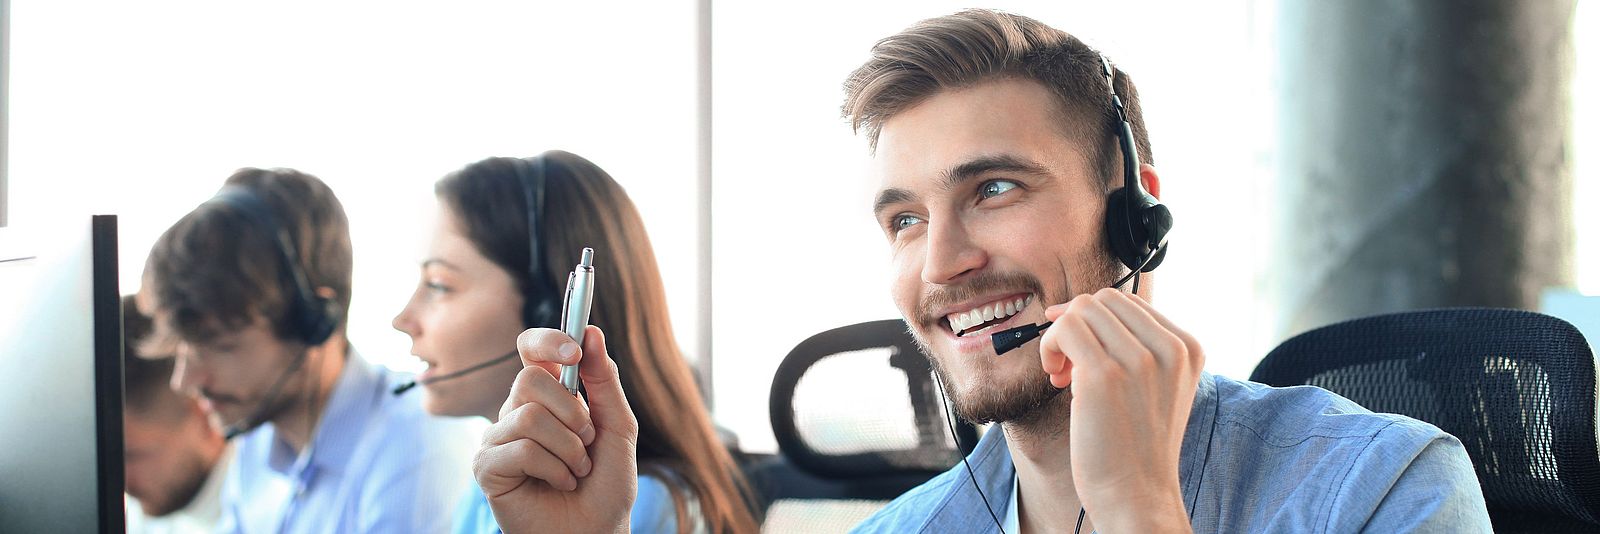 Arbeitnehmer bietet professionelle Hilfe per Telefon an